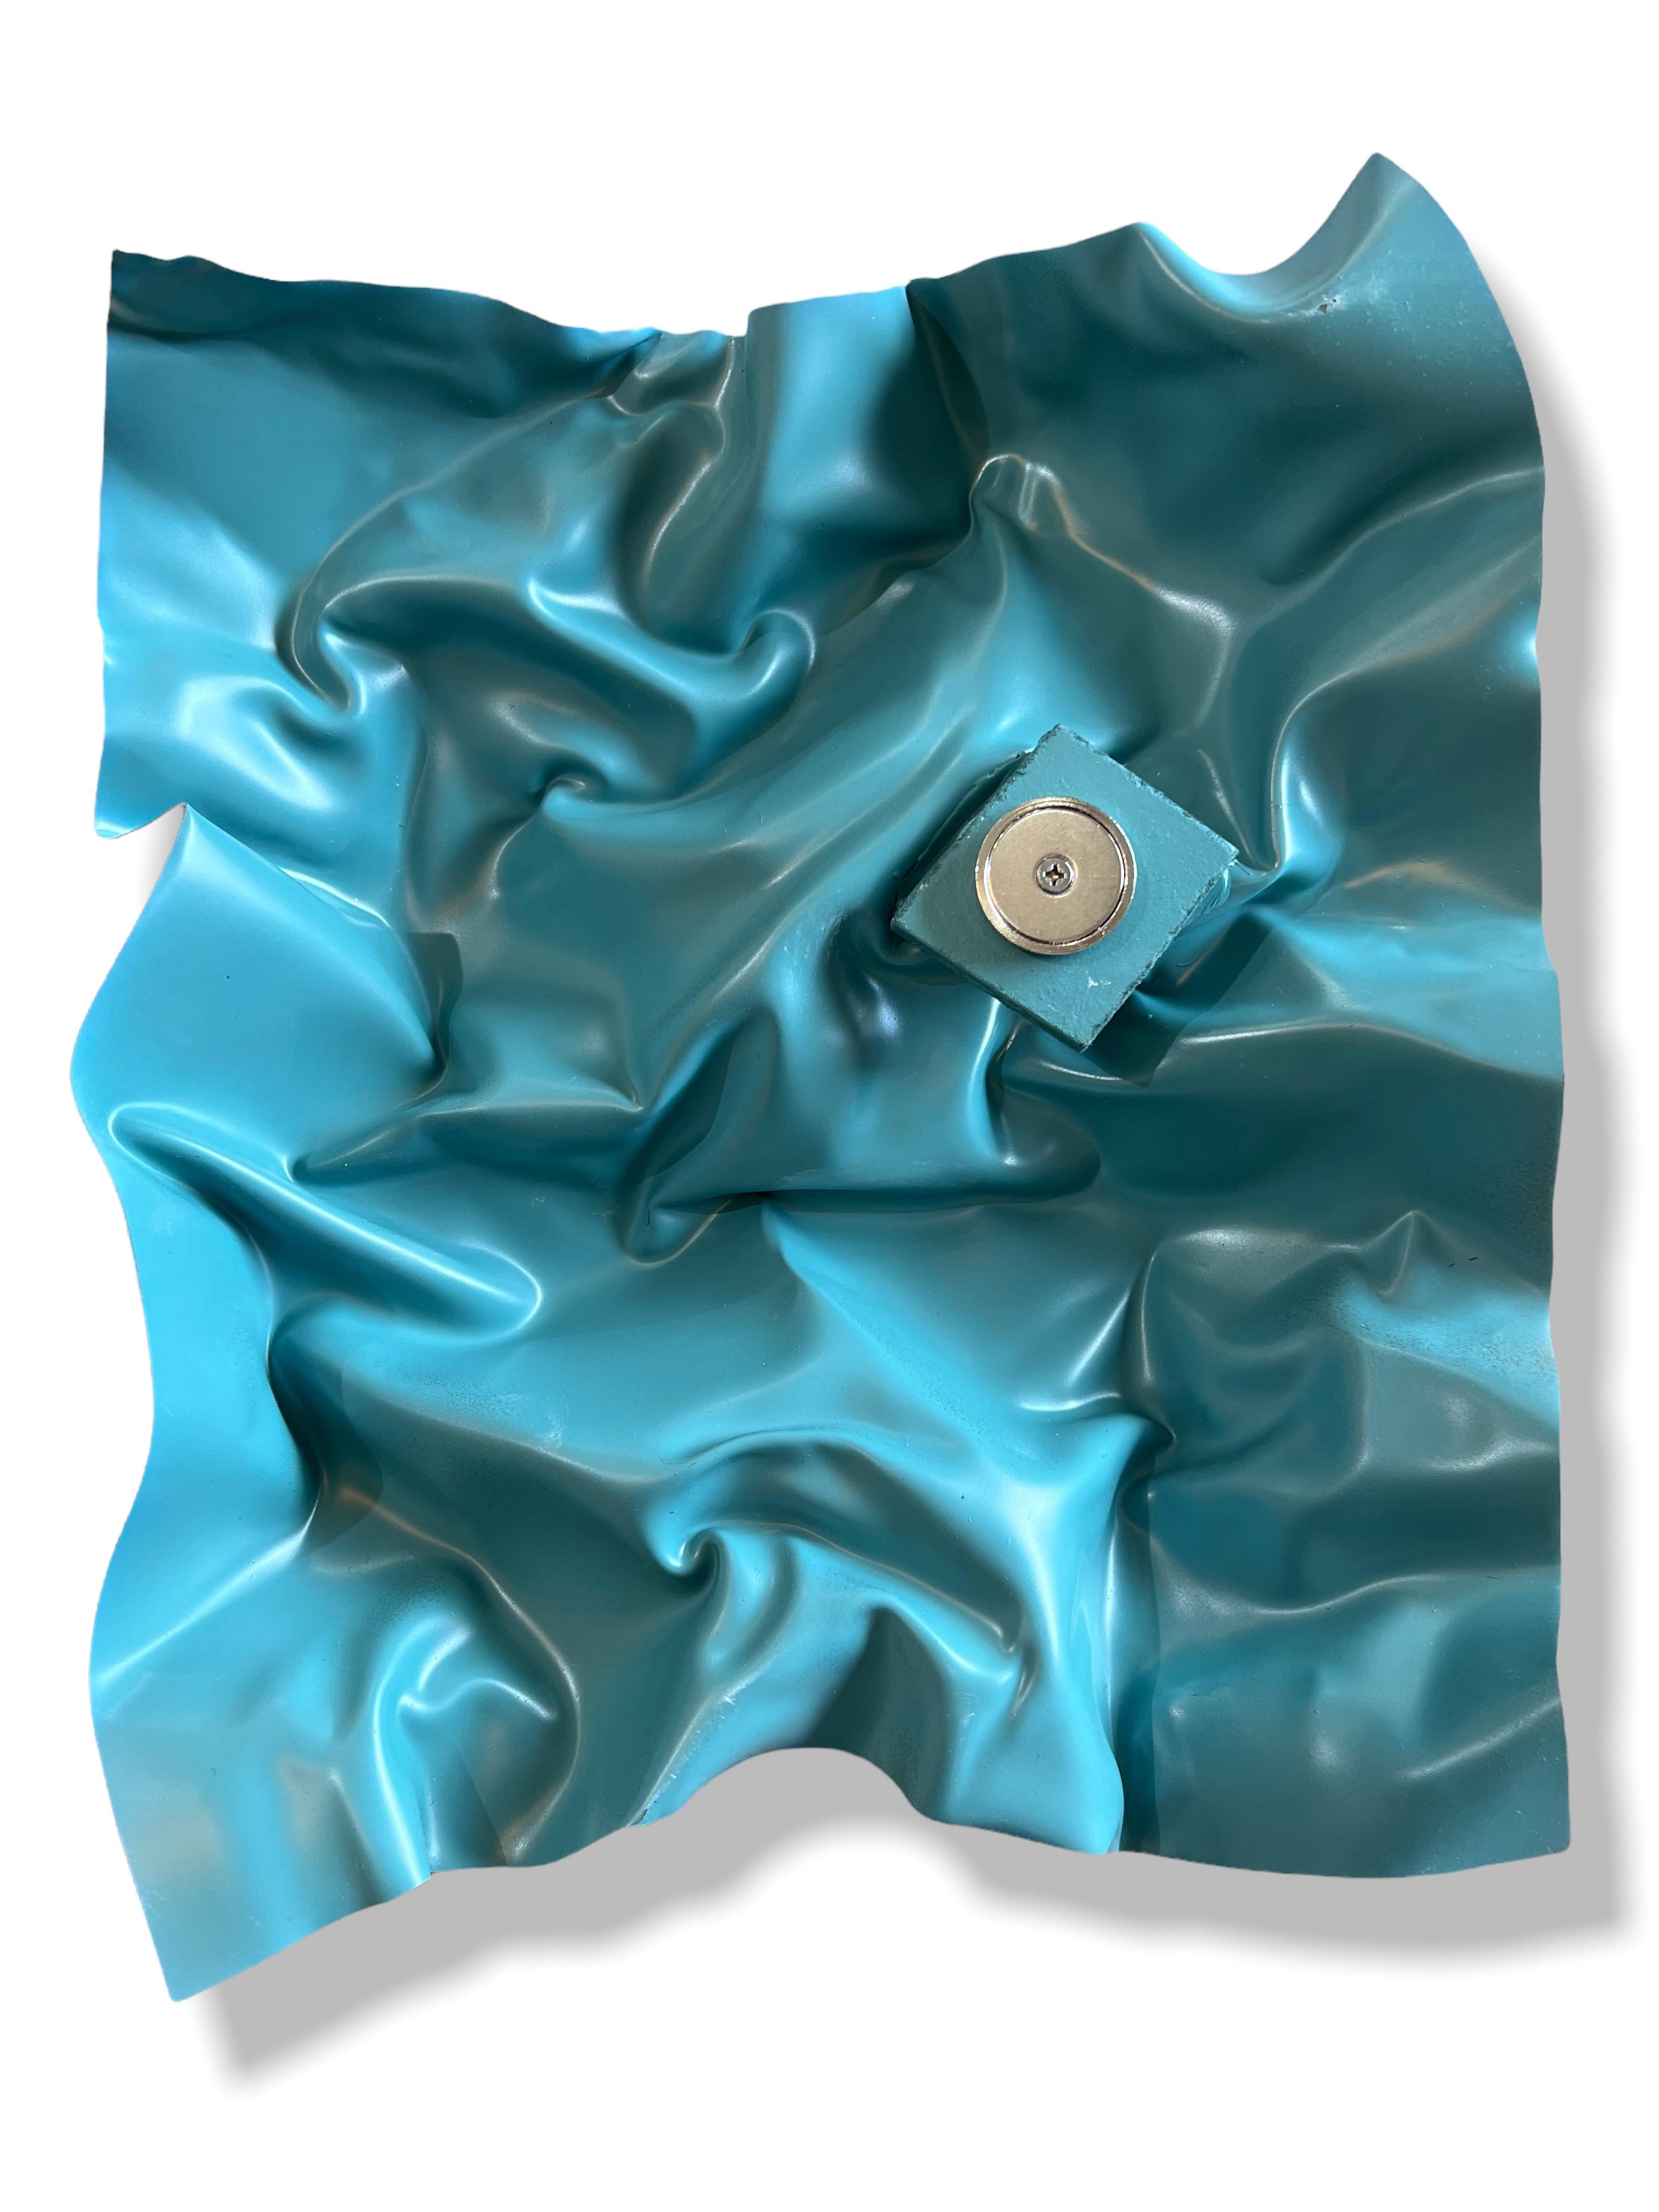 Blaue Flying Waves Abstrakt, Modern, Plexiglas, Satz von Wandmalerei Skulpturen 2021.
Diese kleinformatigen Skulpturen sind Teil der Serie Waves. Sie sind mit Acrylfarbe, Sprühfarbe und Pastellkreide gemalt. Sie werden von Hand geformt, wobei Hitze